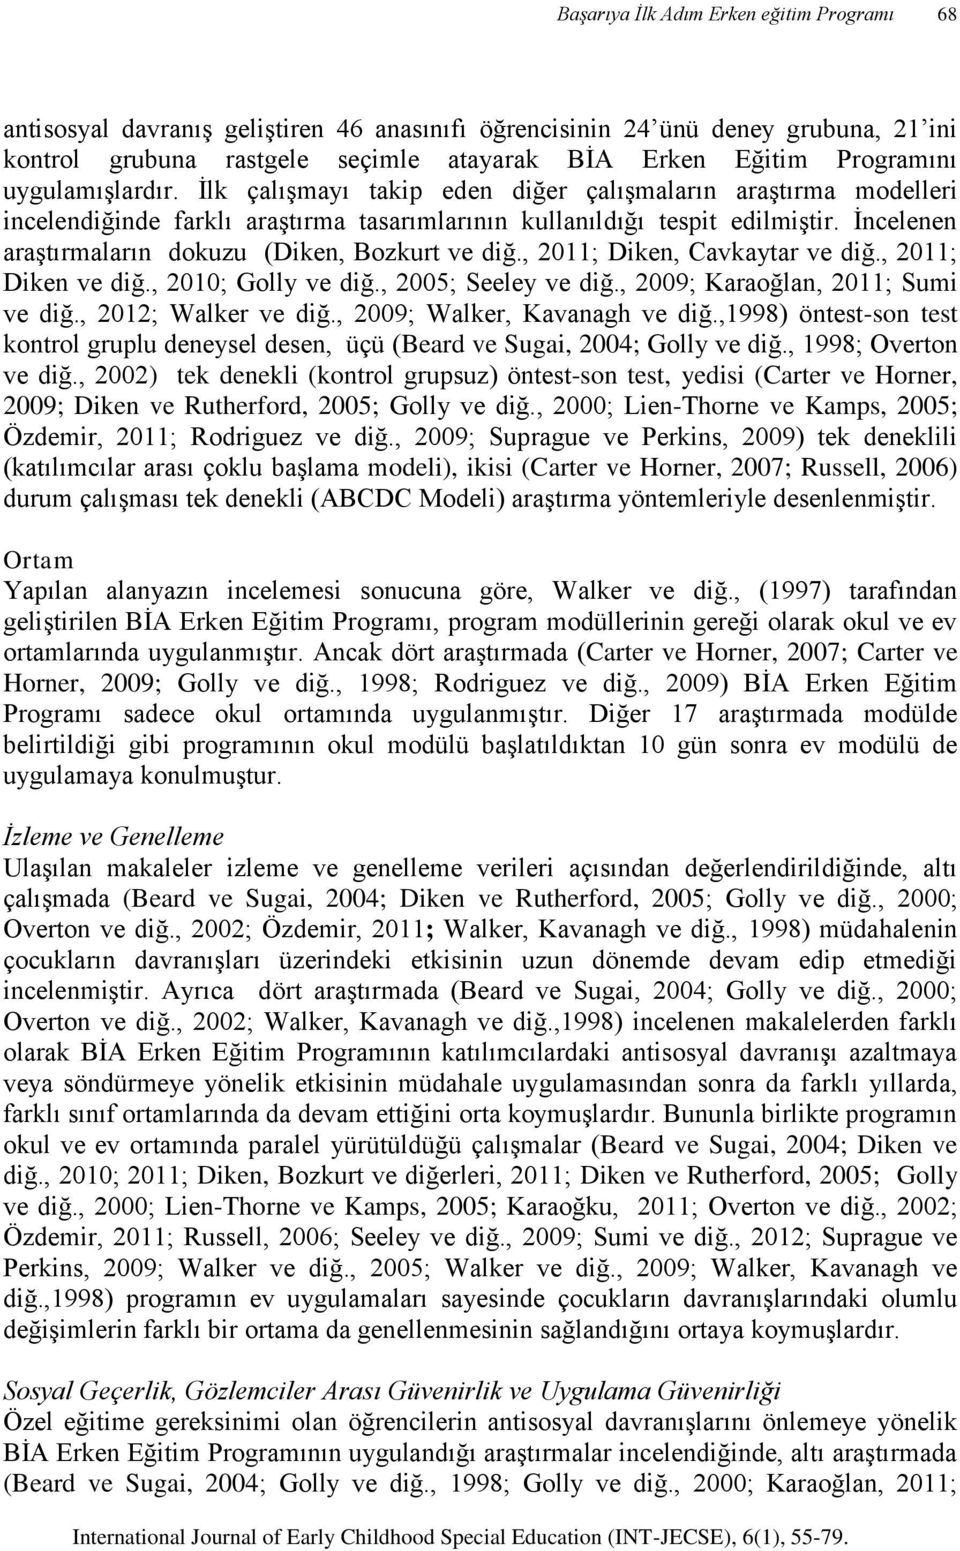 , 2011; Diken, Cavkaytar ve diğ., 2011; Diken ve diğ., 2010; Golly ve diğ., 2005; Seeley ve diğ., 2009; Karaoğlan, 2011; Sumi ve diğ., 2012; Walker ve diğ., 2009; Walker, Kavanagh ve diğ.